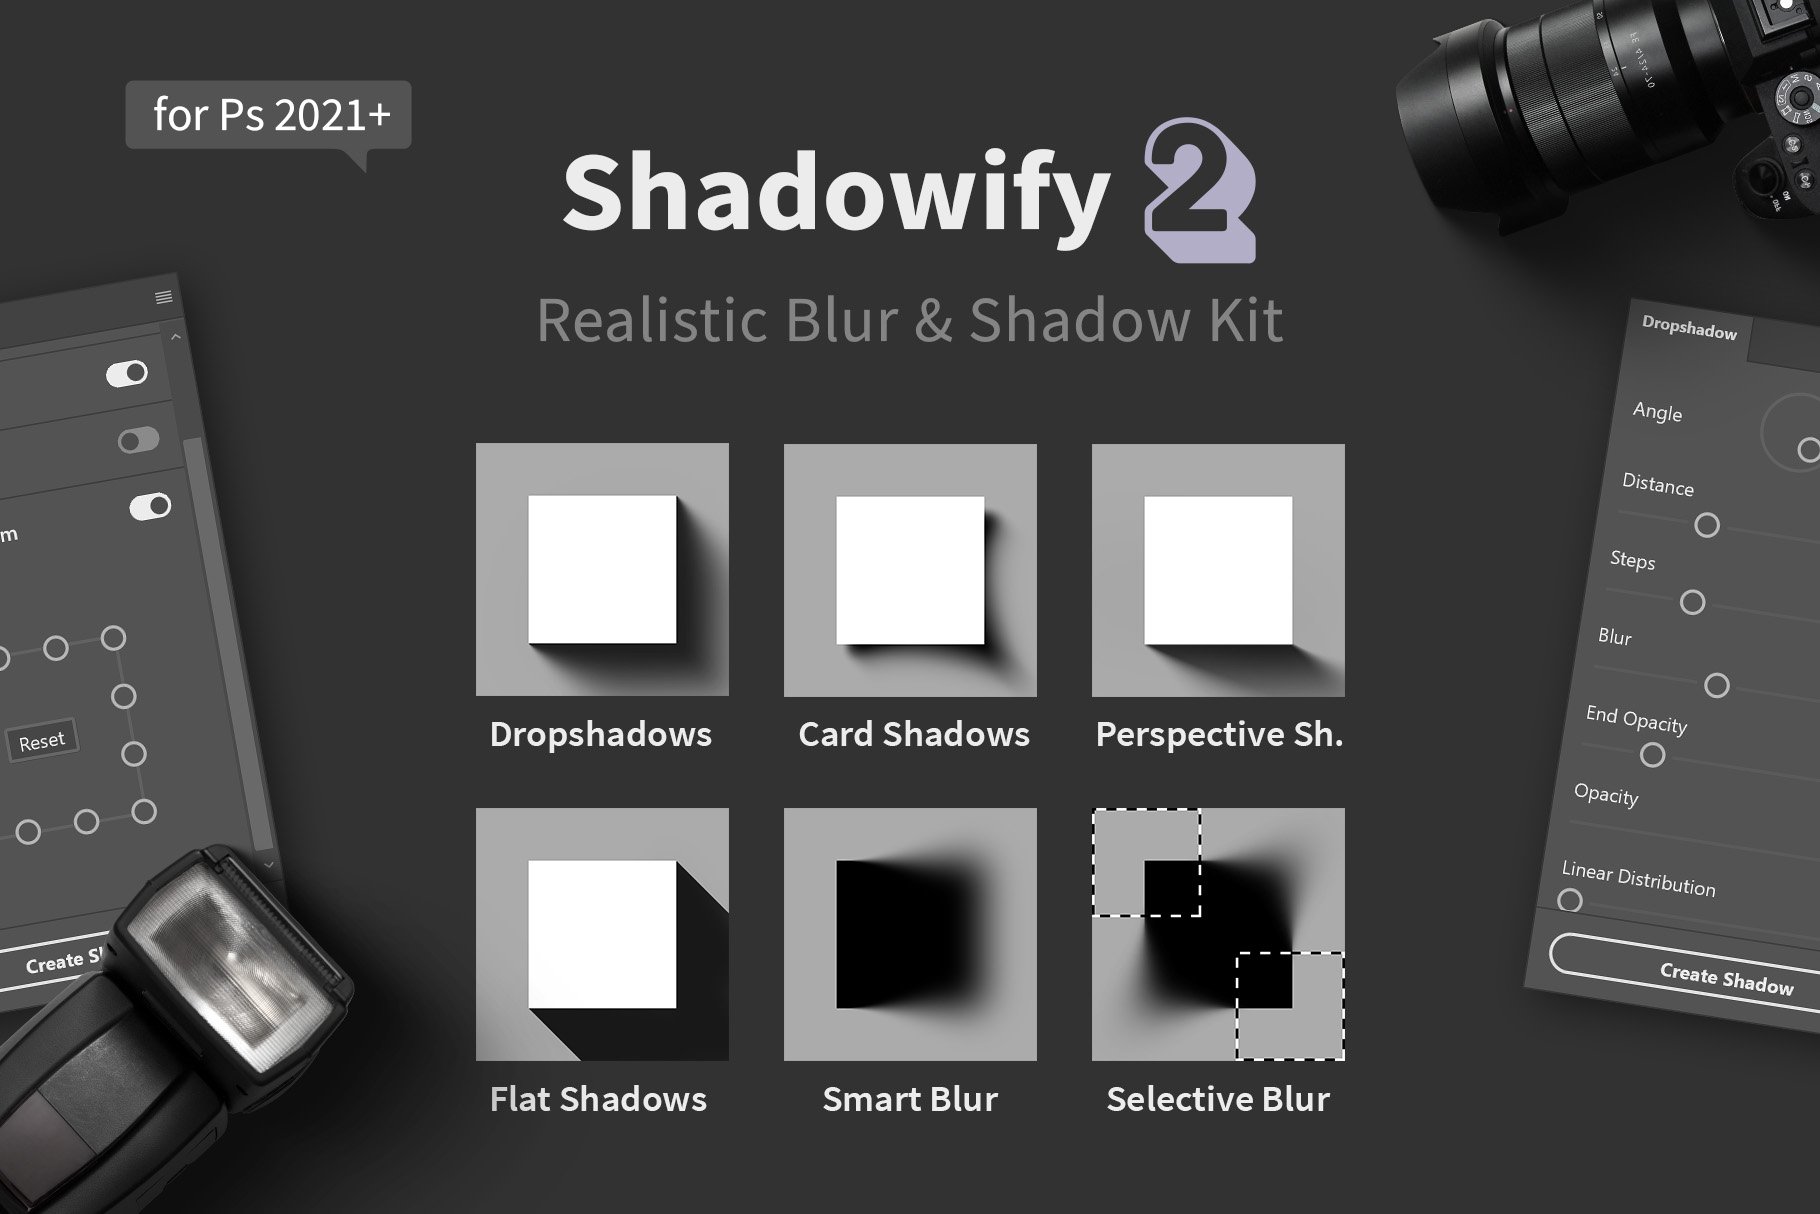 Shadowify 2